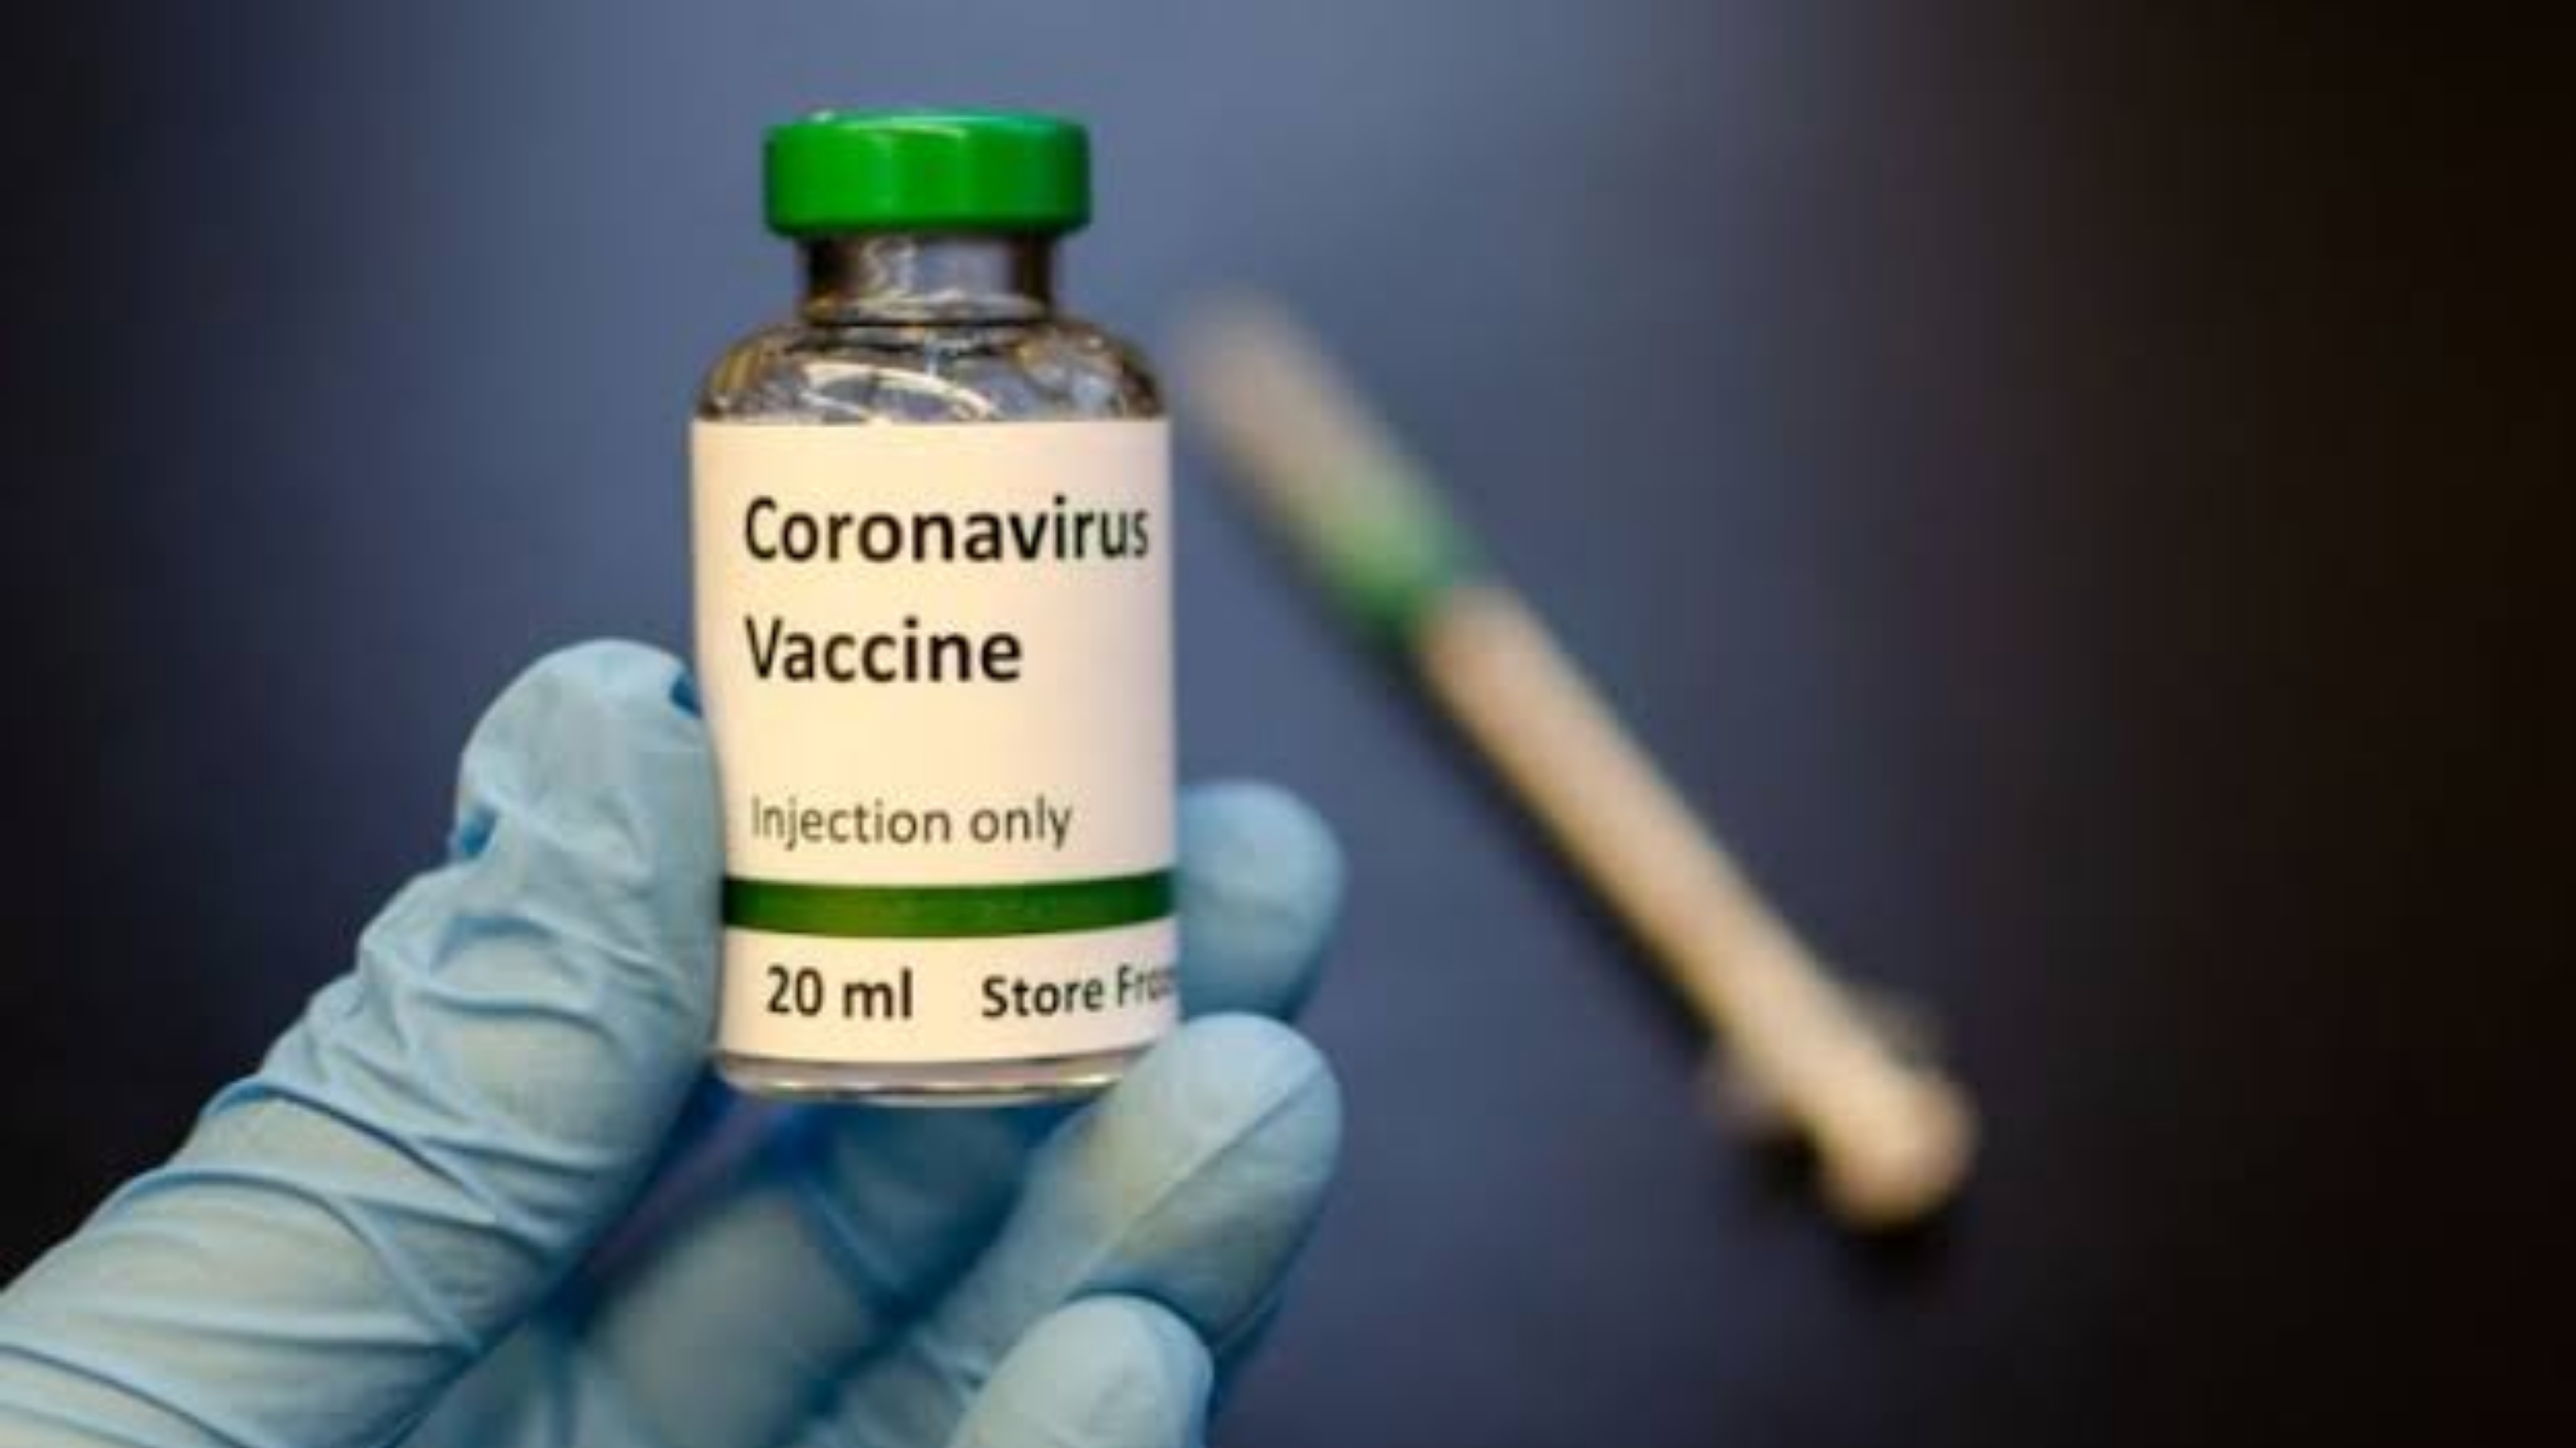 Koronavirus peyvəndinin gələcəkdəki fəsadları hələ məlum deyil - Həkim